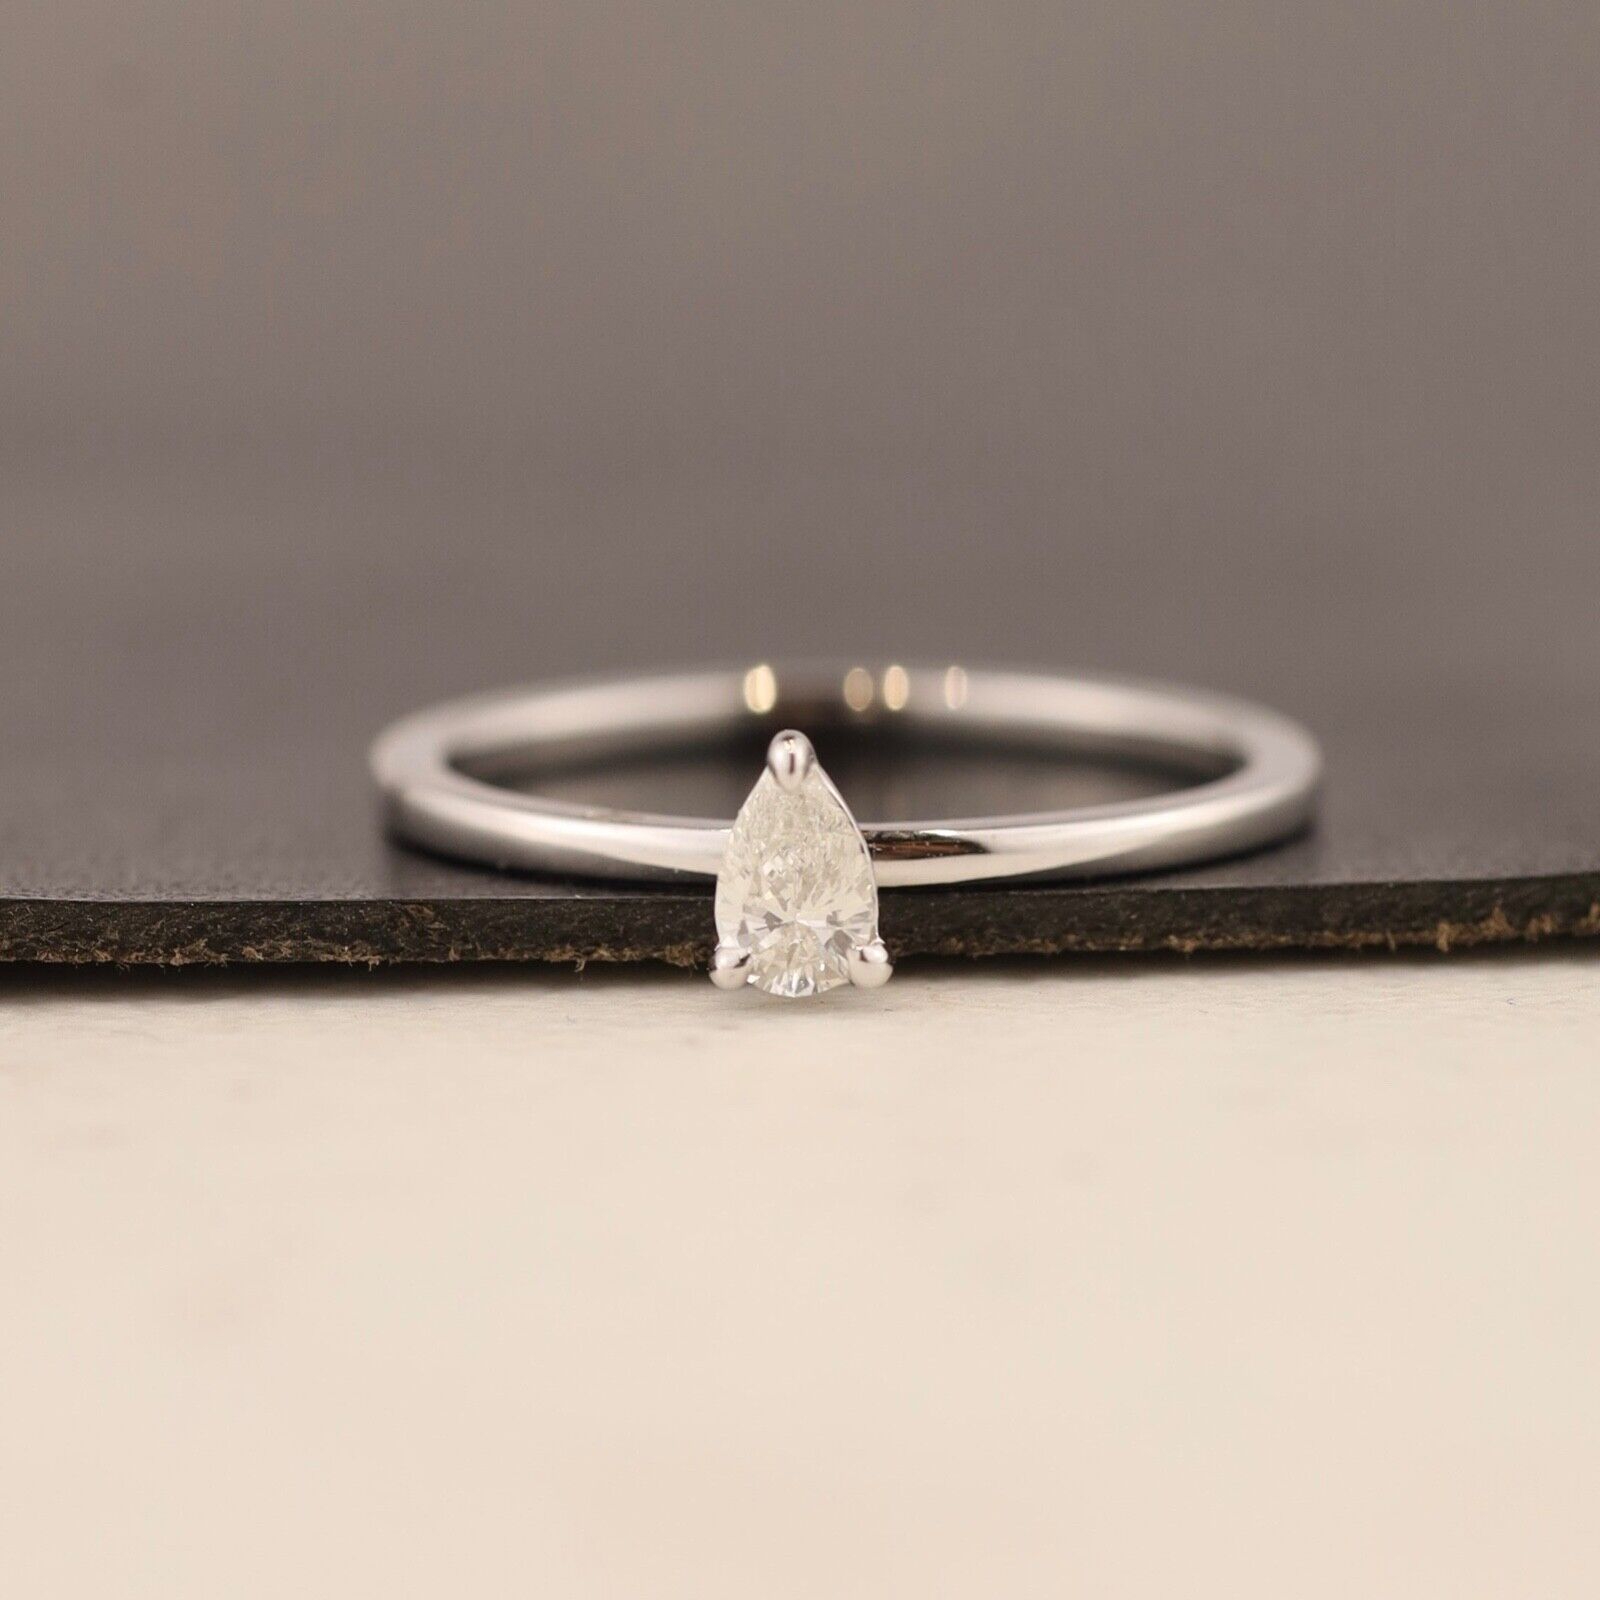 .15 Carat Diamond Engagement Ring 18k White Gold ER0261-WG